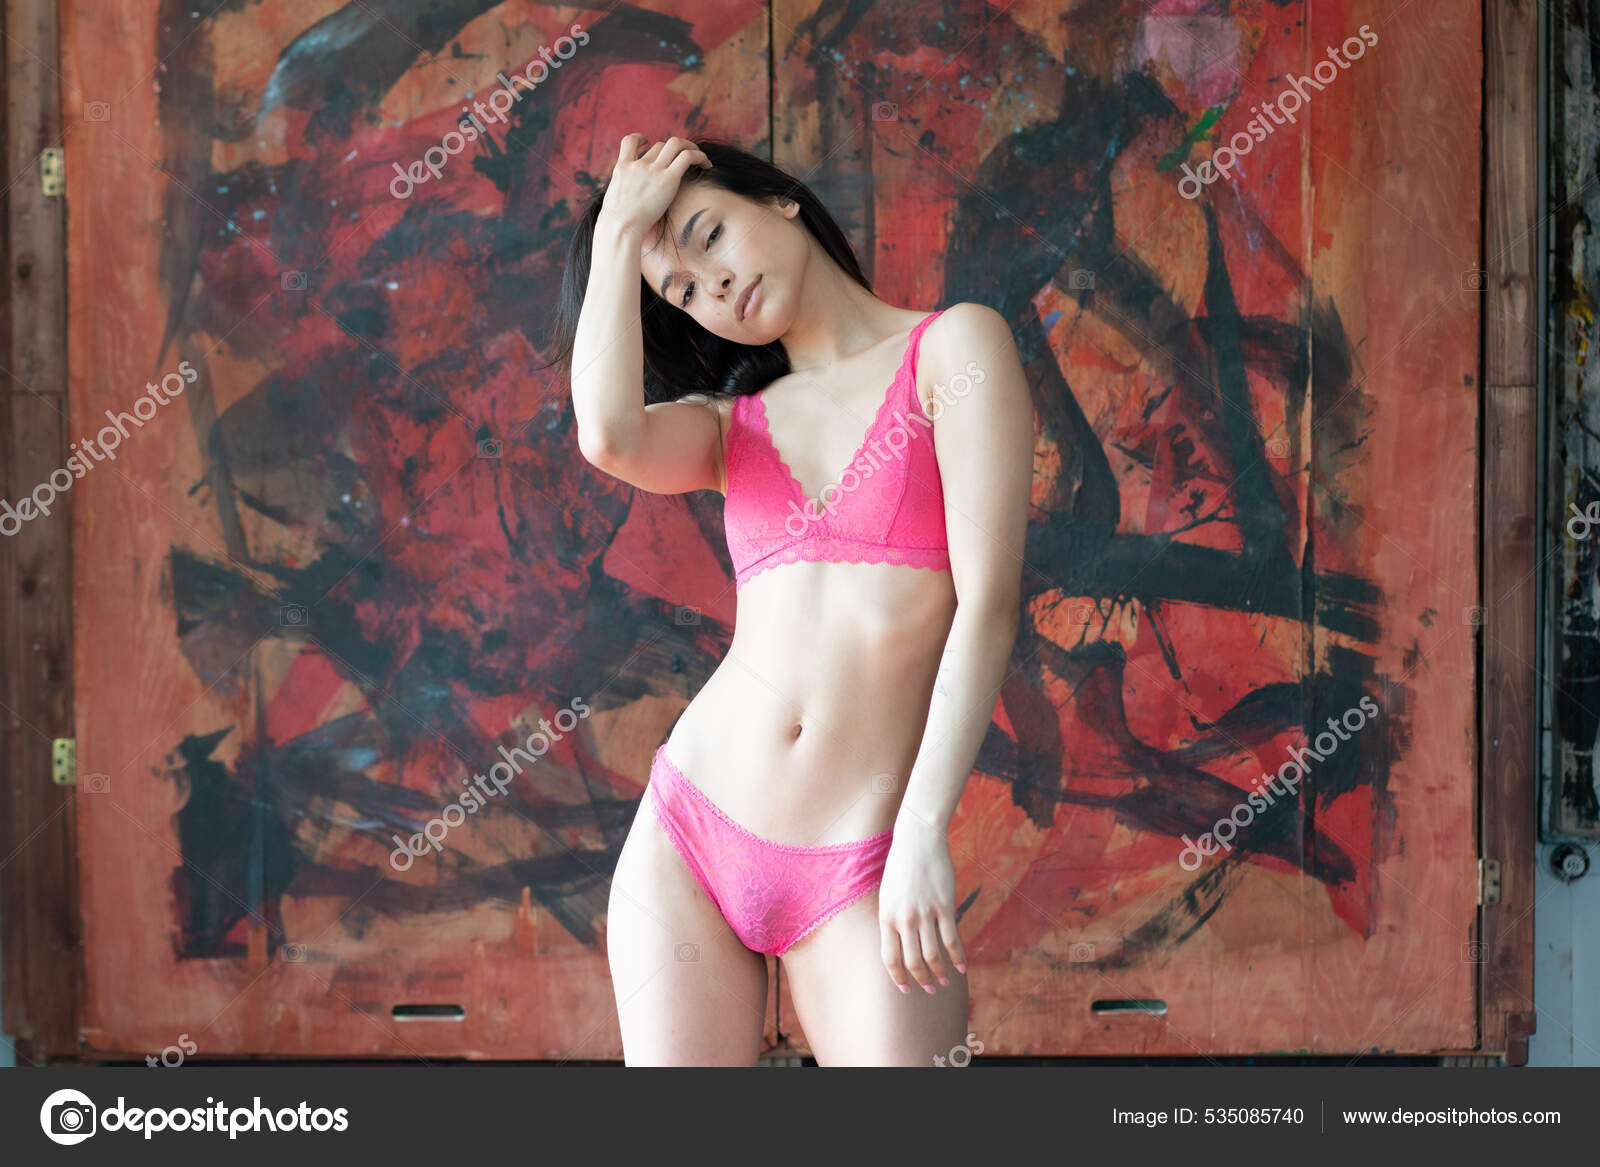 https://st.depositphotos.com/10086424/53508/i/1600/depositphotos_535085740-stock-photo-young-beautiful-woman-posing-red.jpg